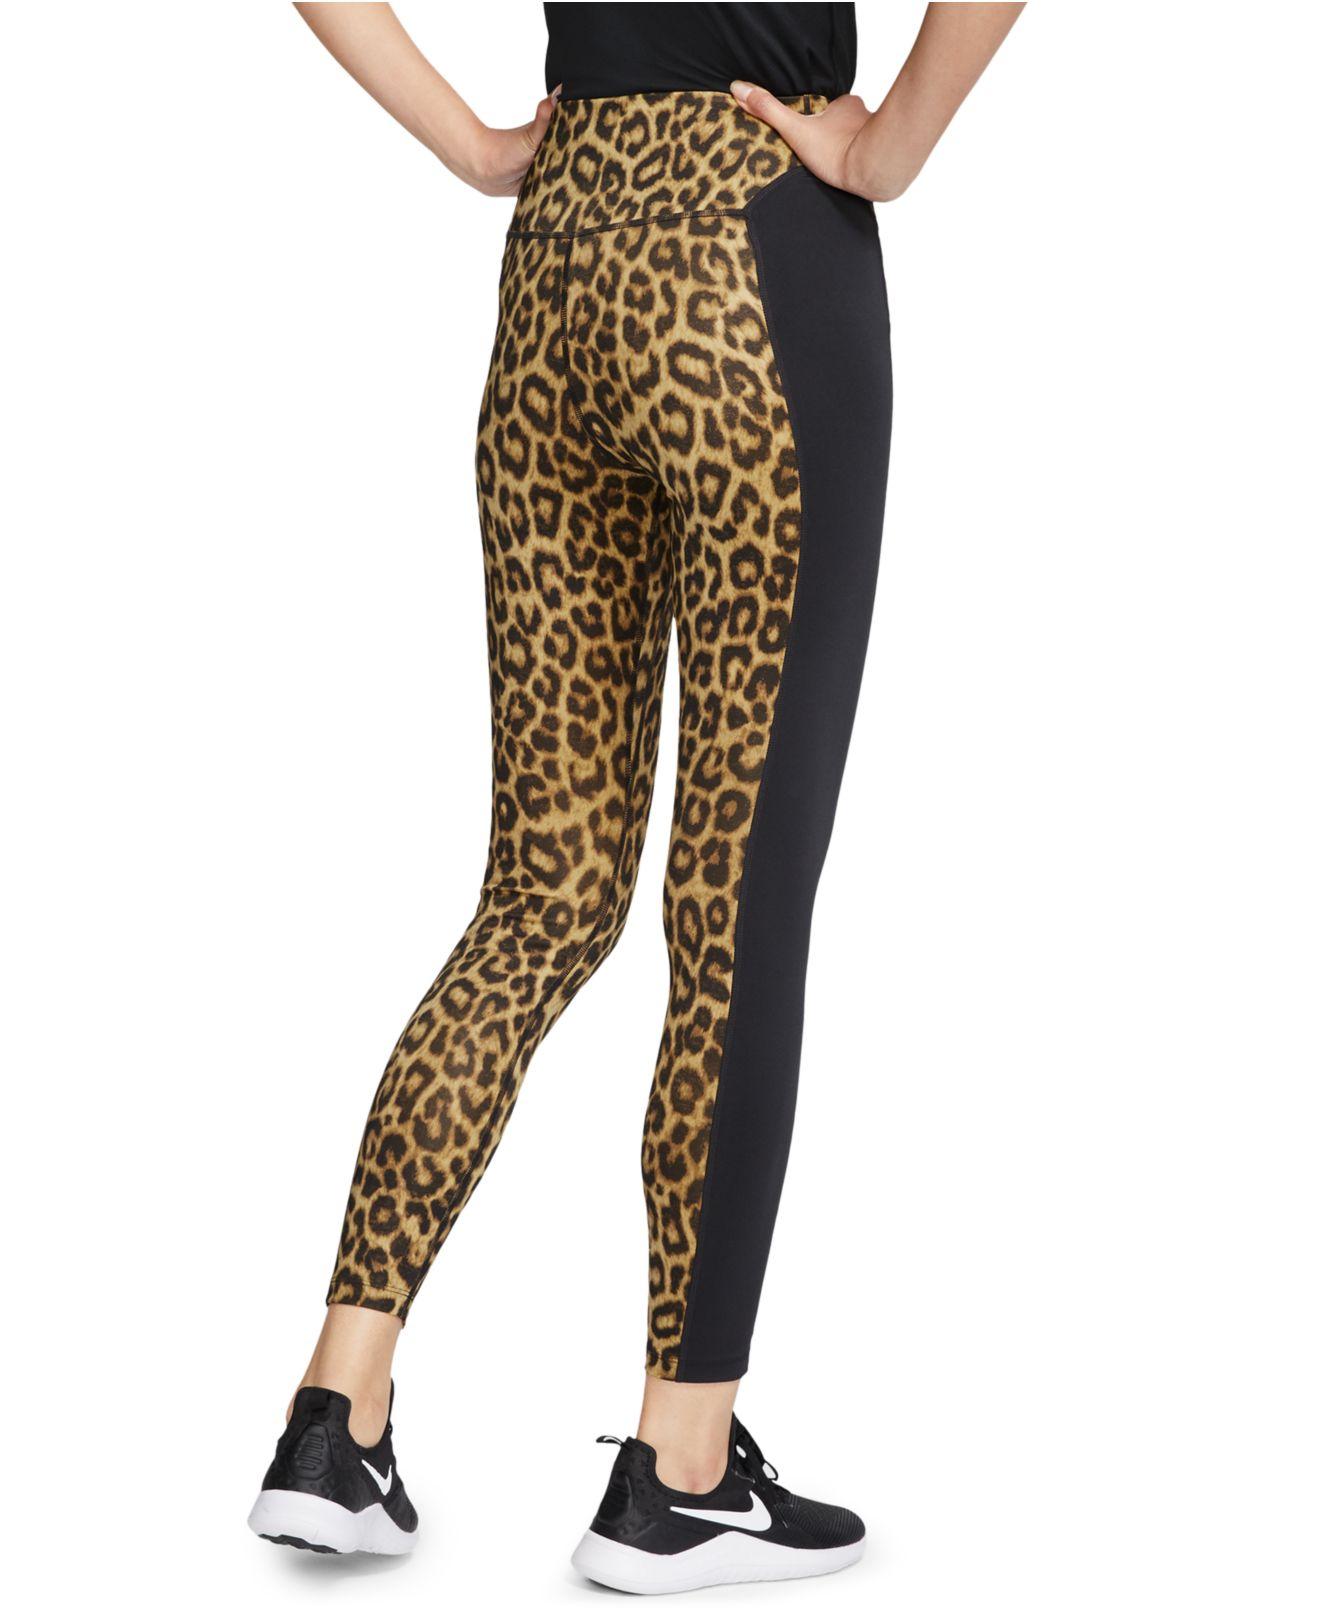 nike one leopard leggings